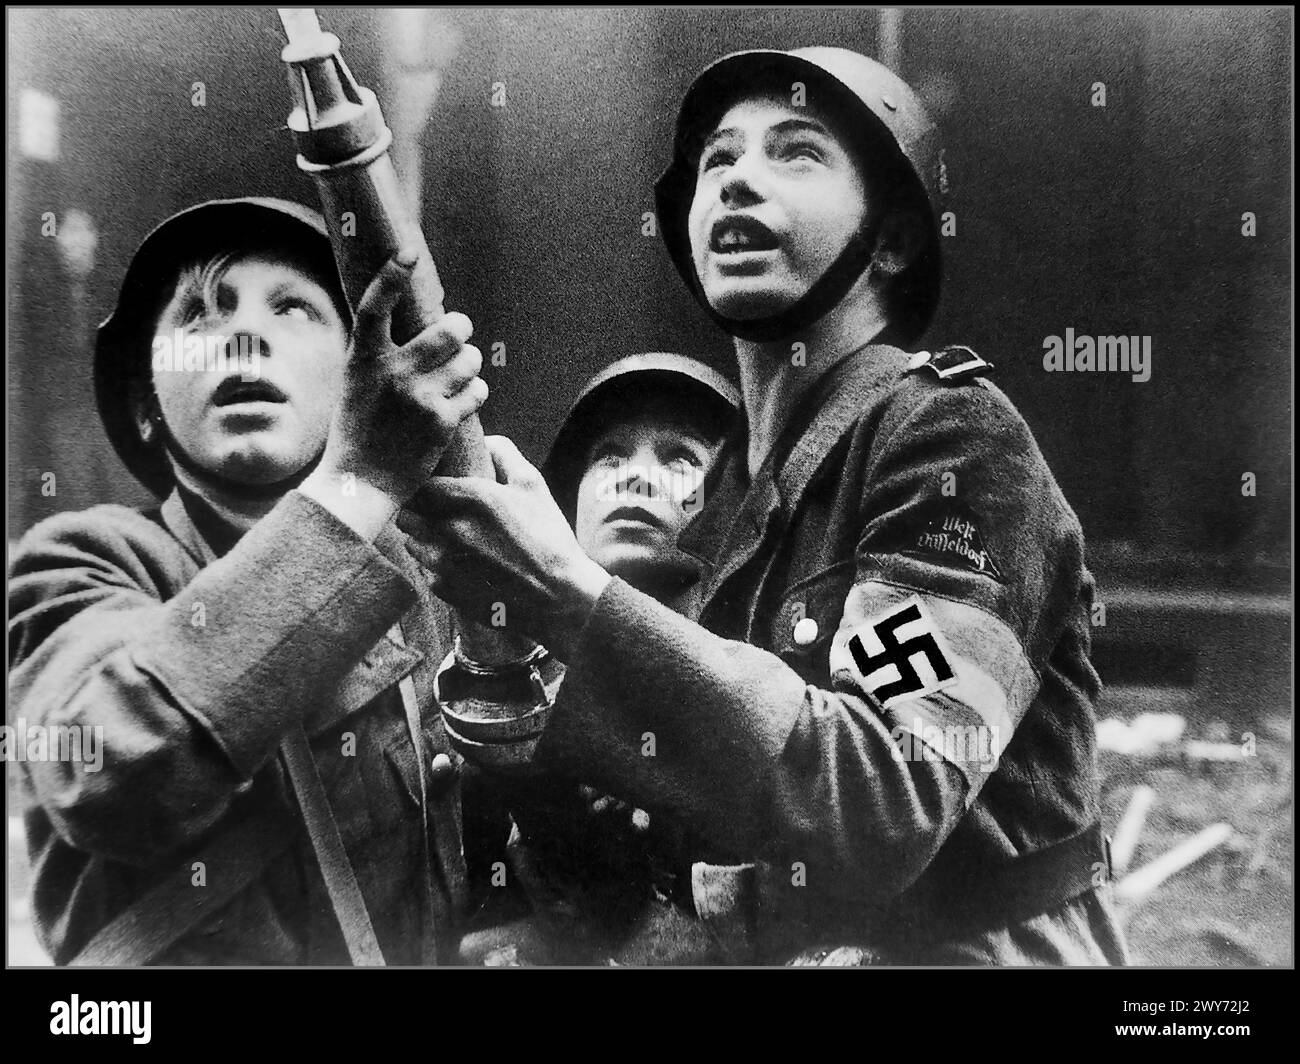 2. Weltkrieg 1943 mit Hitlerjugend-Jungen, Adolf Hitlers letzte Hoffnung gegen die alliierten Armeen, die alliierten Bombenbrände in Düsseldorf bekämpfen Stockfoto